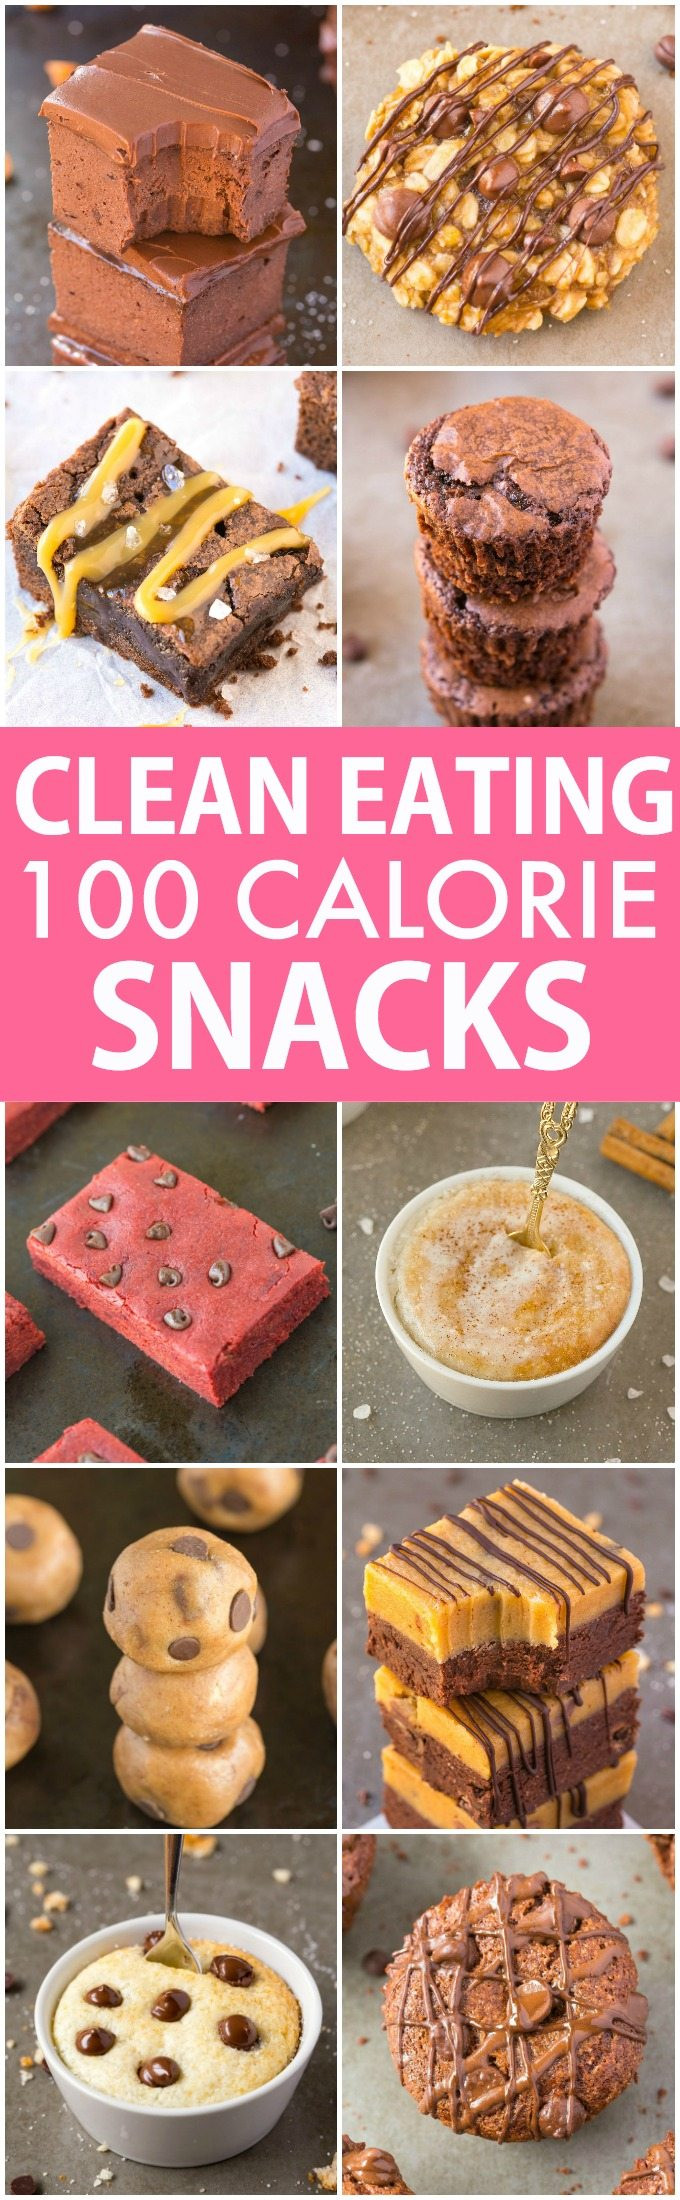 Healthy Sweet Snacks
 10 Clean Eating Healthy Sweet Snacks Under 100 Calories